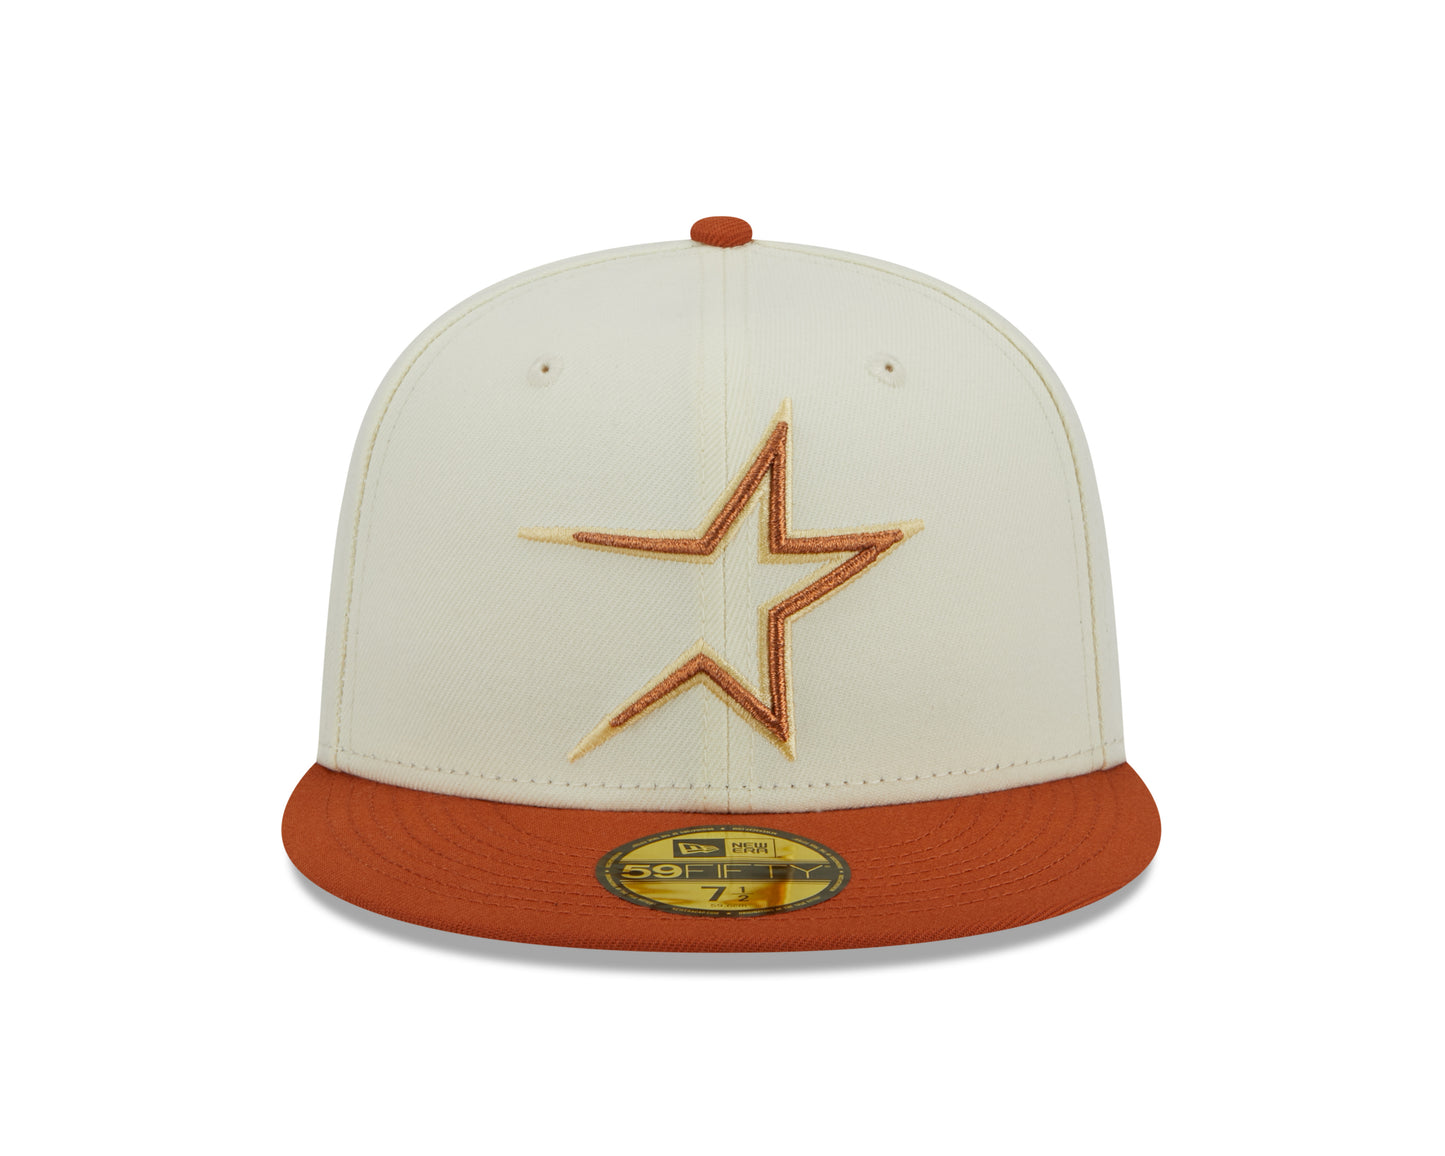 New Era - Houston Astros 59Fifty Fitted City Icon - Chrome White - Headz Up 